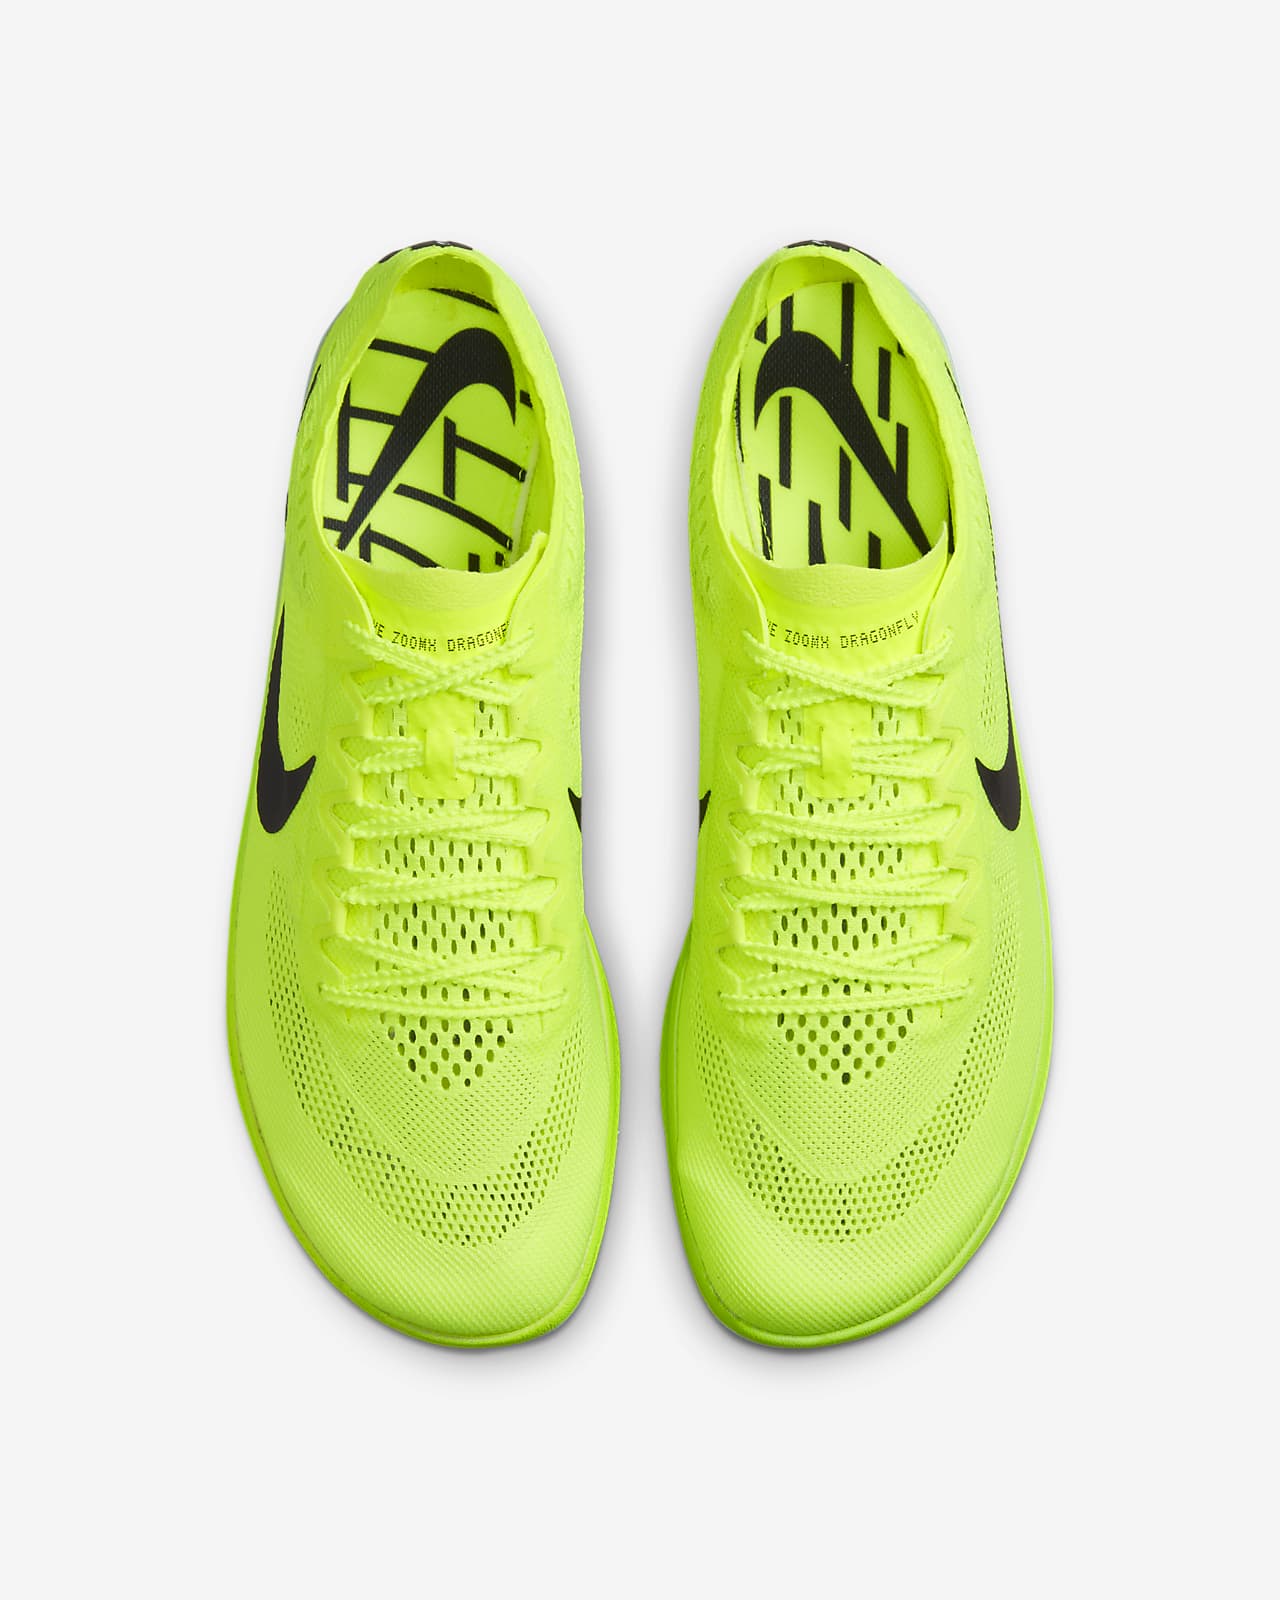 Giotto Dibondon parilla Repegar Nike ZoomX Dragonfly Zapatillas de atletismo con clavos. Nike ES